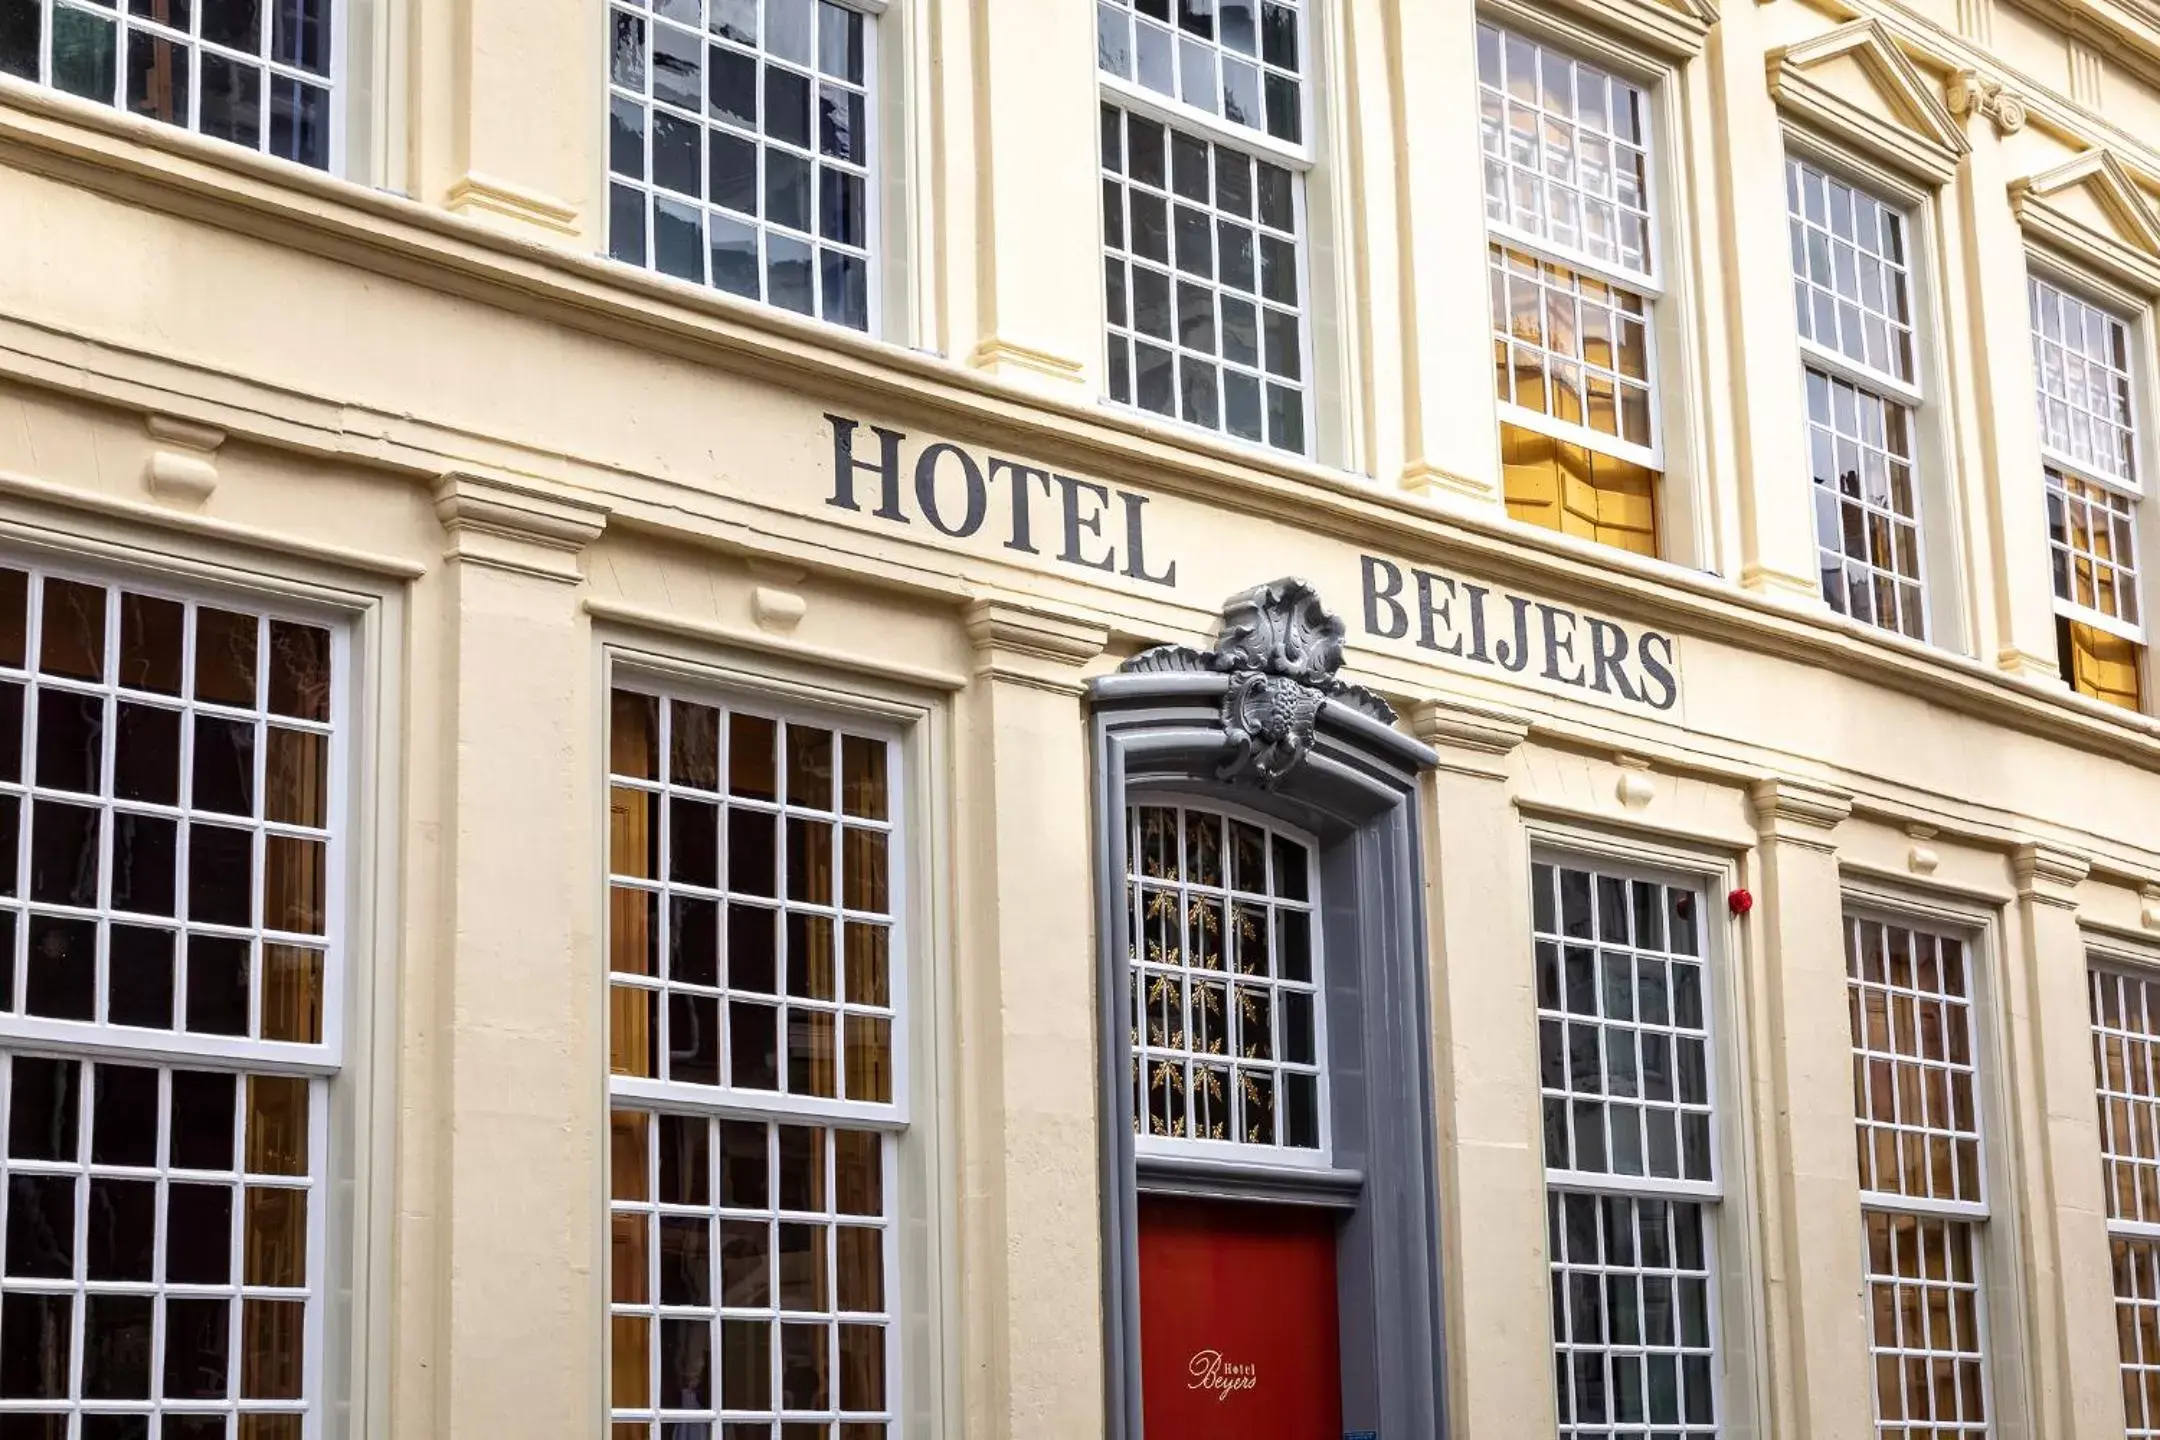 Property Building in Hotel Beijers